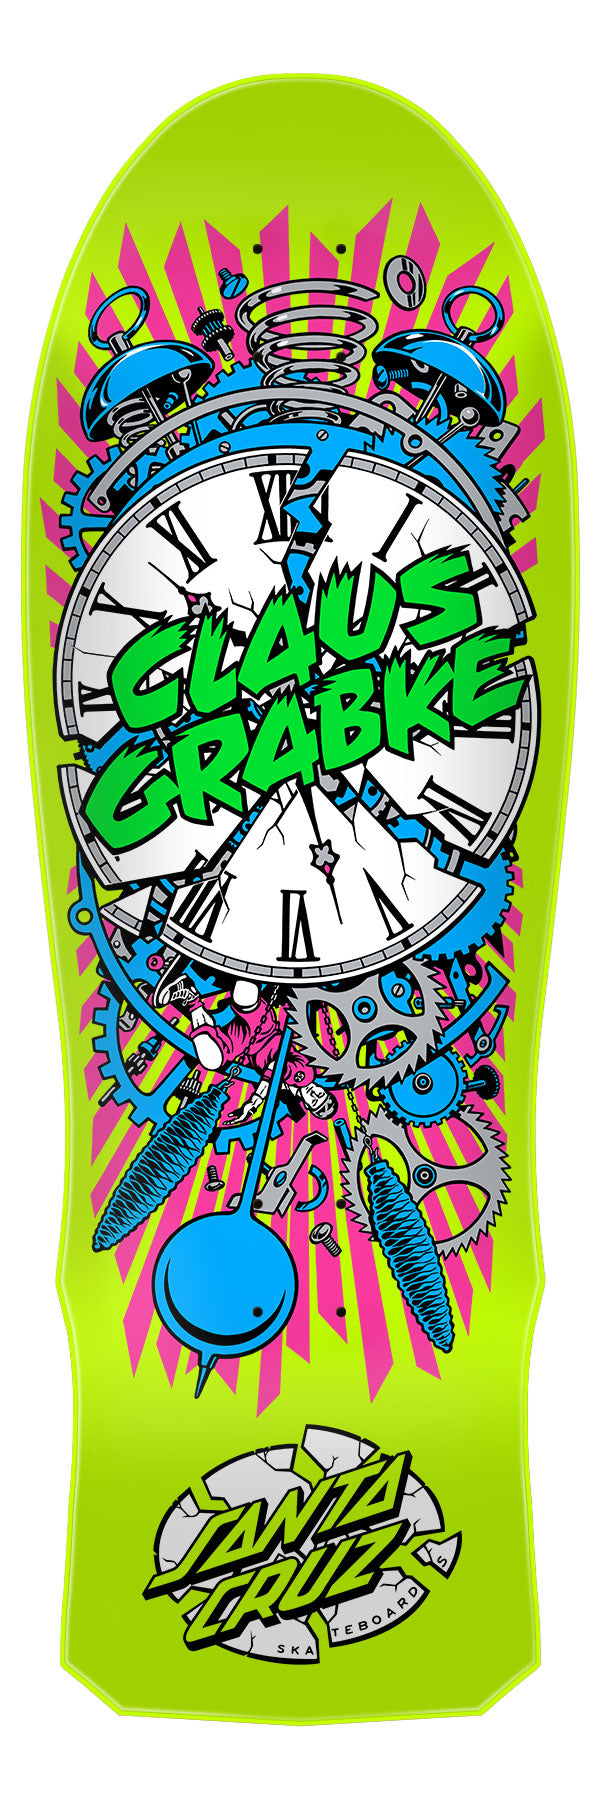 *** PRE-ORDER *** Santa Cruz Grabke Exploding Clock Reissue Skateboard Deck 10.04in x 29.83in